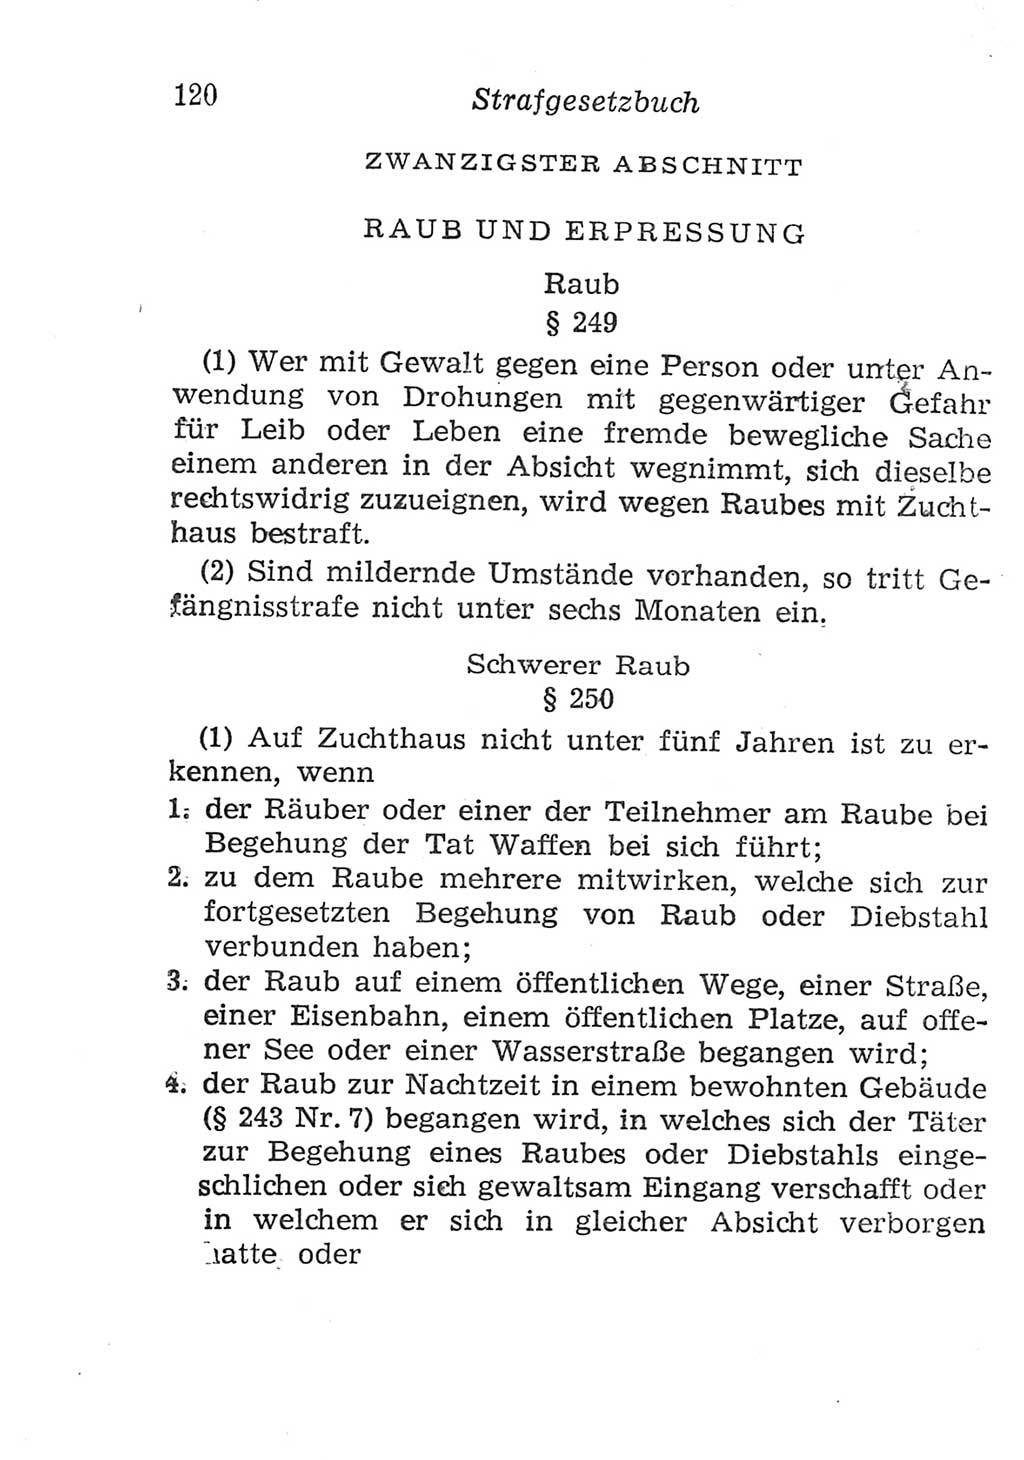 Strafgesetzbuch (StGB) und andere Strafgesetze [Deutsche Demokratische Republik (DDR)] 1957, Seite 120 (StGB Strafges. DDR 1957, S. 120)